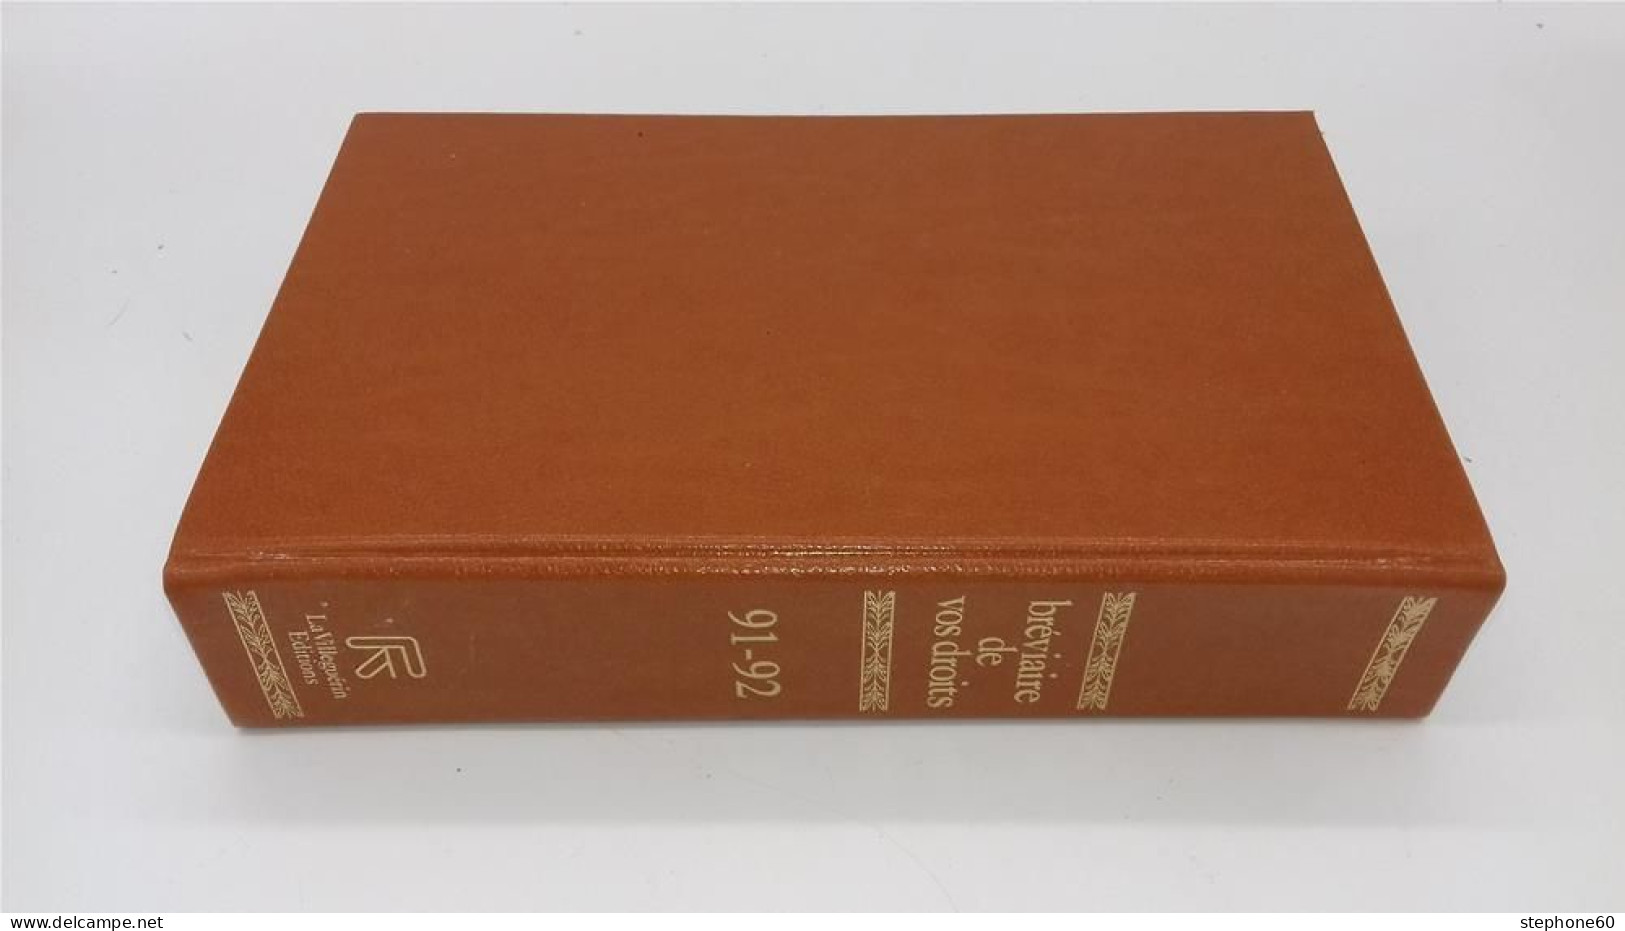 998 - (115) Breviaire De Vos Droits - Edition 1991 - 1992 - La Villeguerin Editions - Right